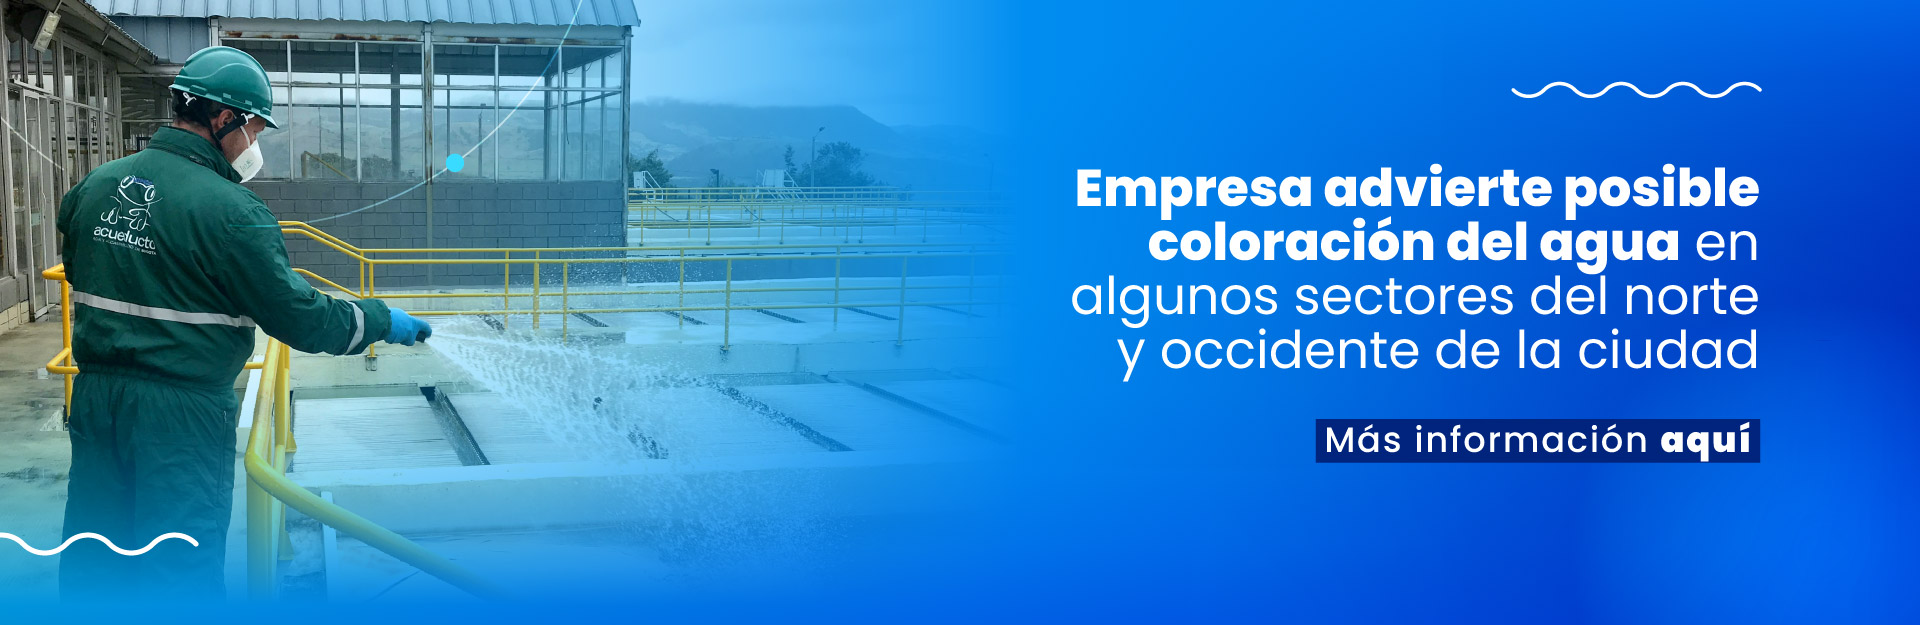 Acueducto de Bogotá advierte posible coloración del agua en algunos sectores del norte y occidente de la ciudad